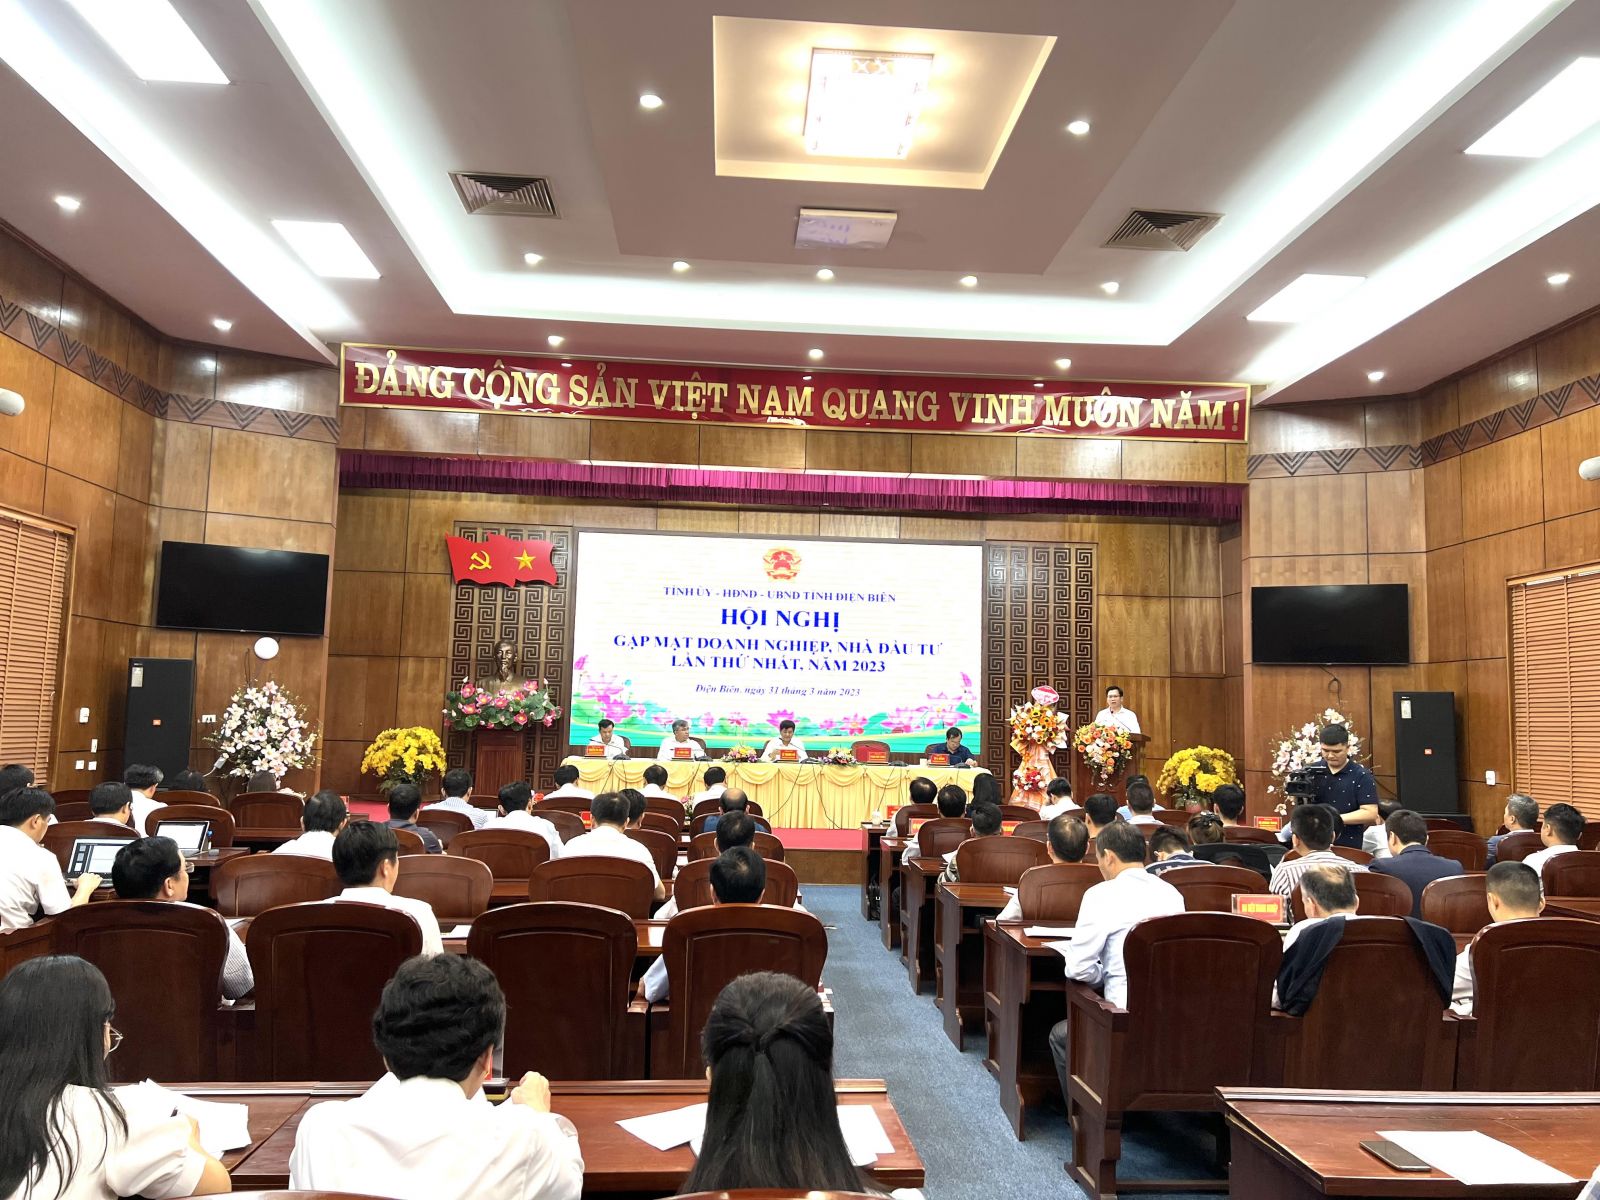 Hội nghị có sự tham gia của đông đảo các nhà đầu tư, doanh nghiệp trên địa bàn tỉnh Điện Biên.